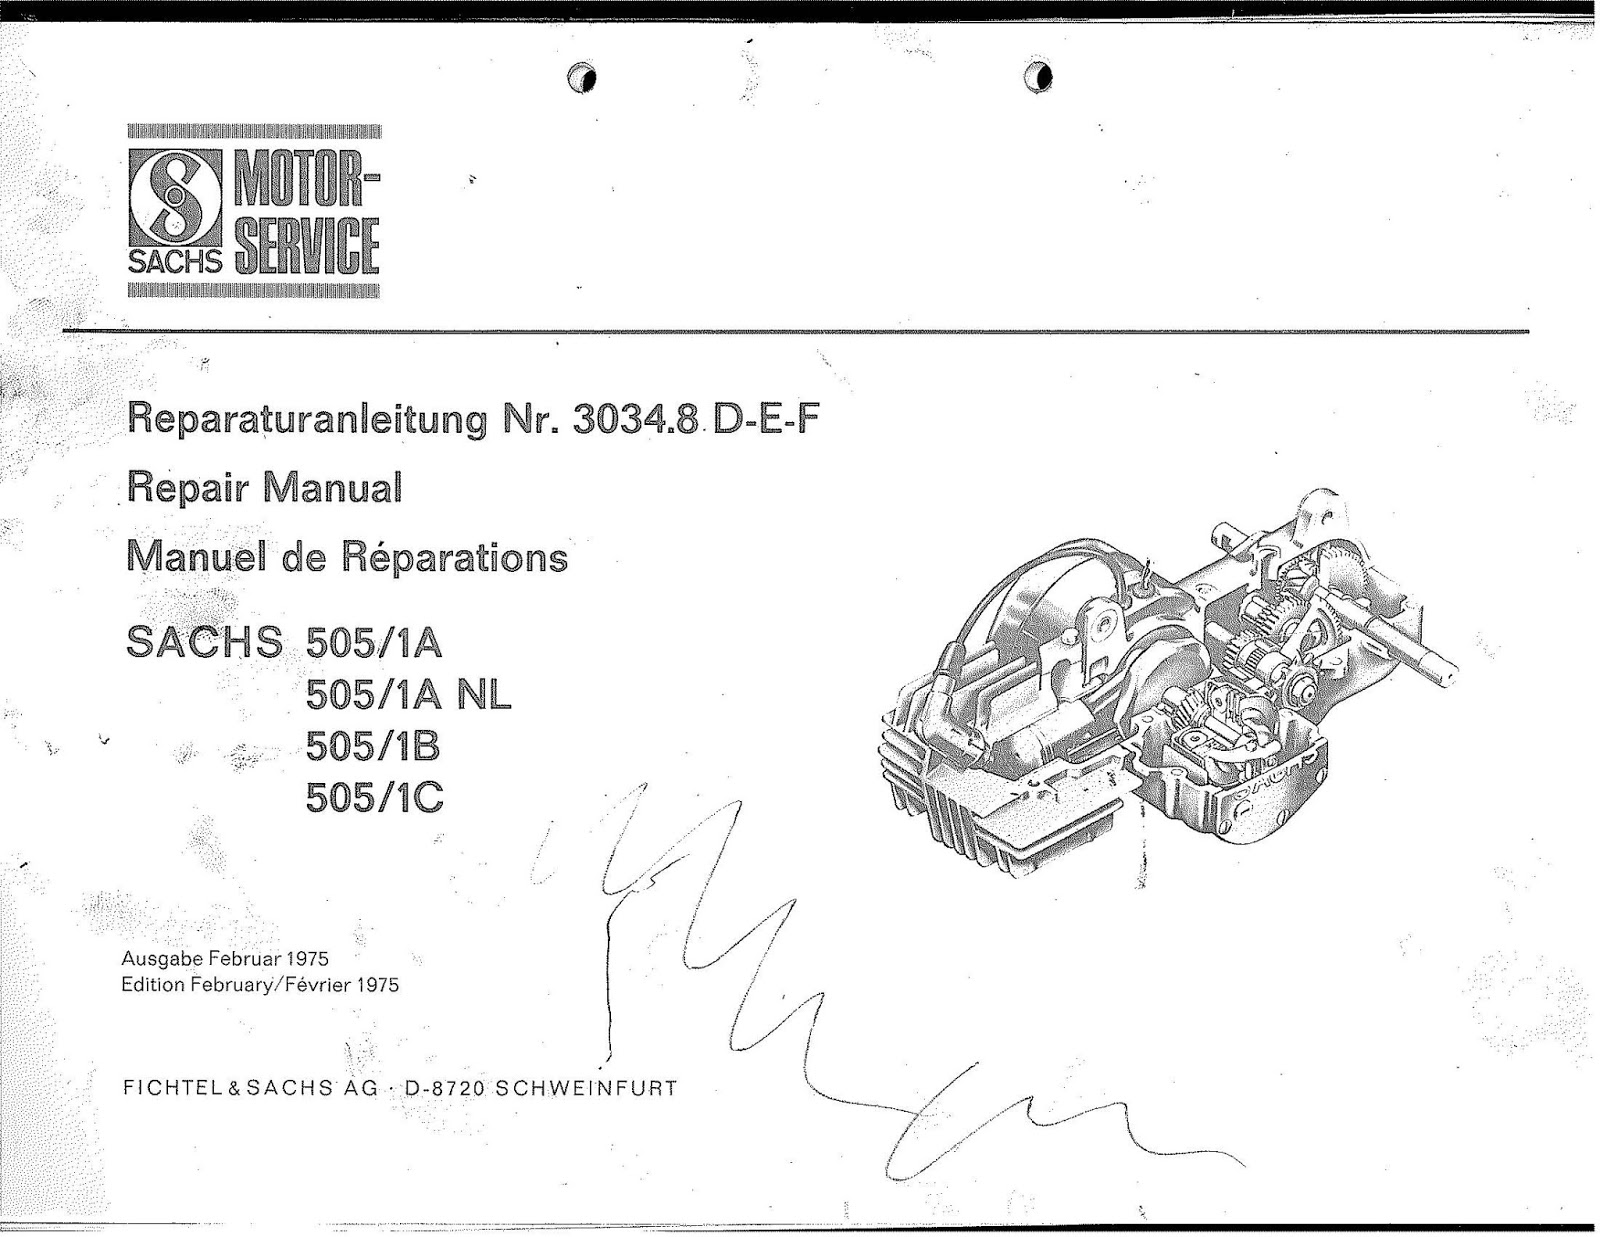 OB1 Repairs: Sachs 505 Service Manual